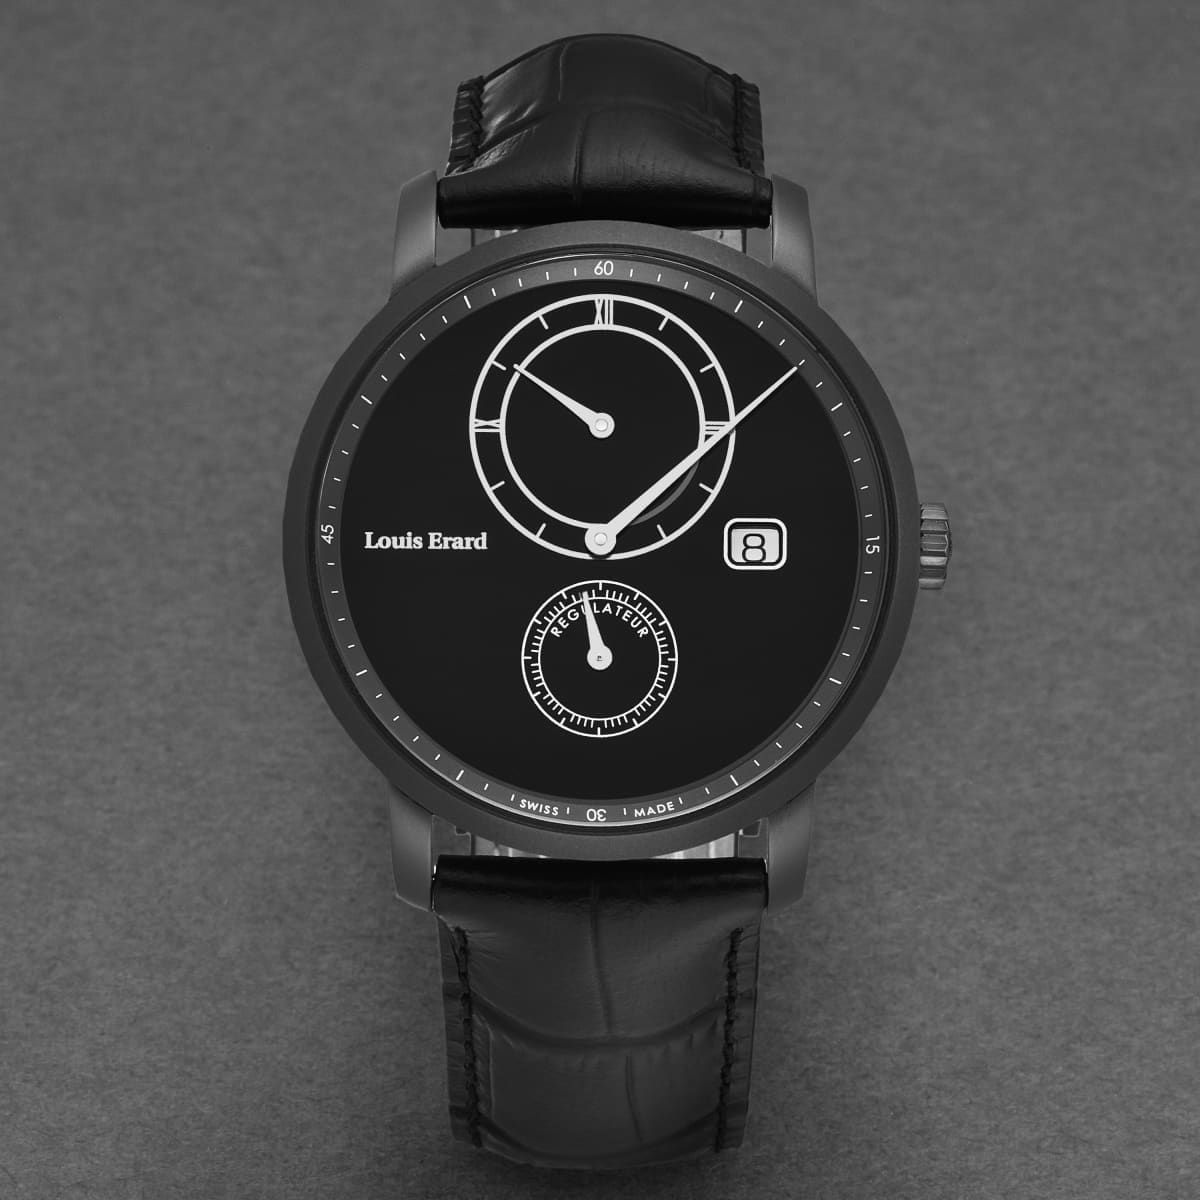 Louis Erard Men’s ’Le Régulateur’ Black Dial Leather Strap Automatic Watch 86236NN22.BDCN51 - On sale